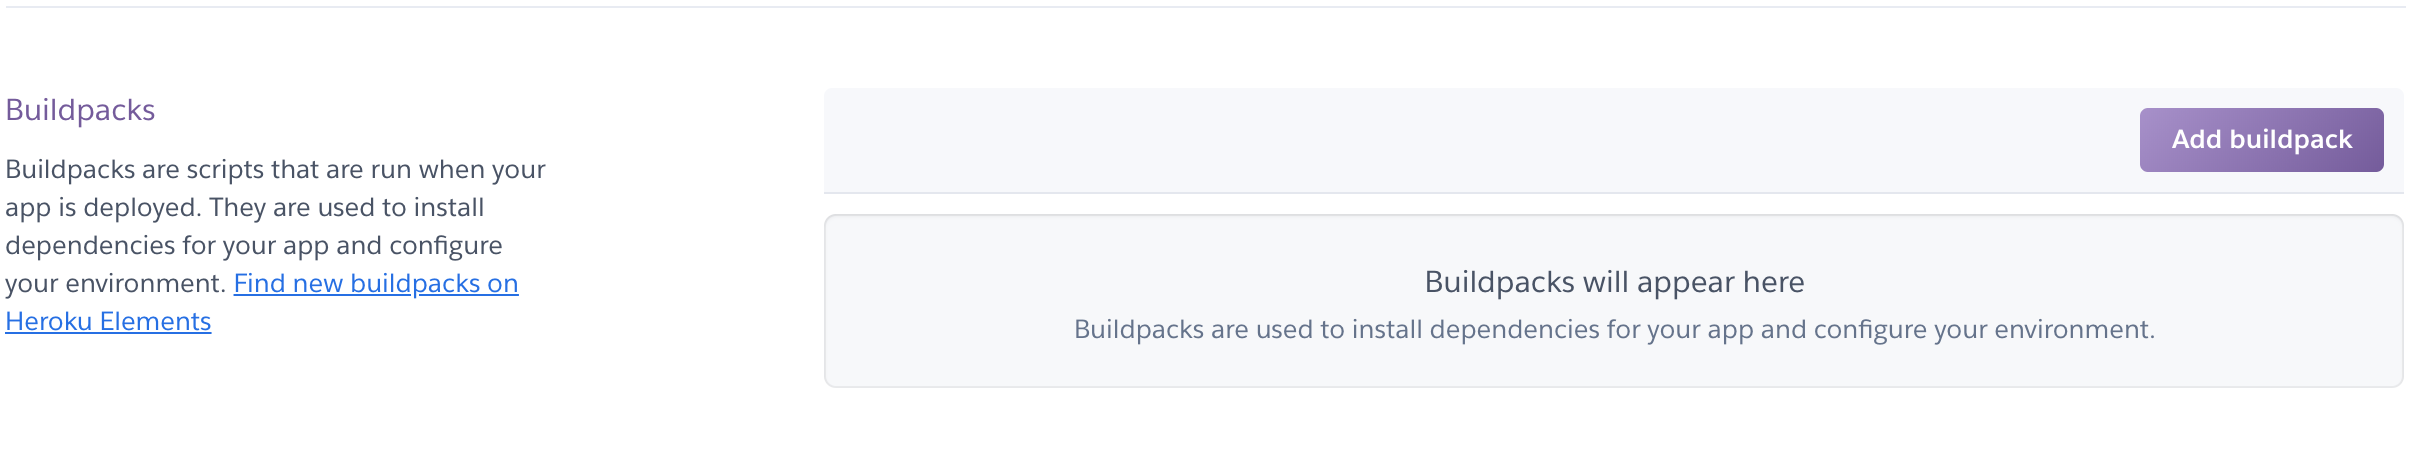 heroku_buildpacks